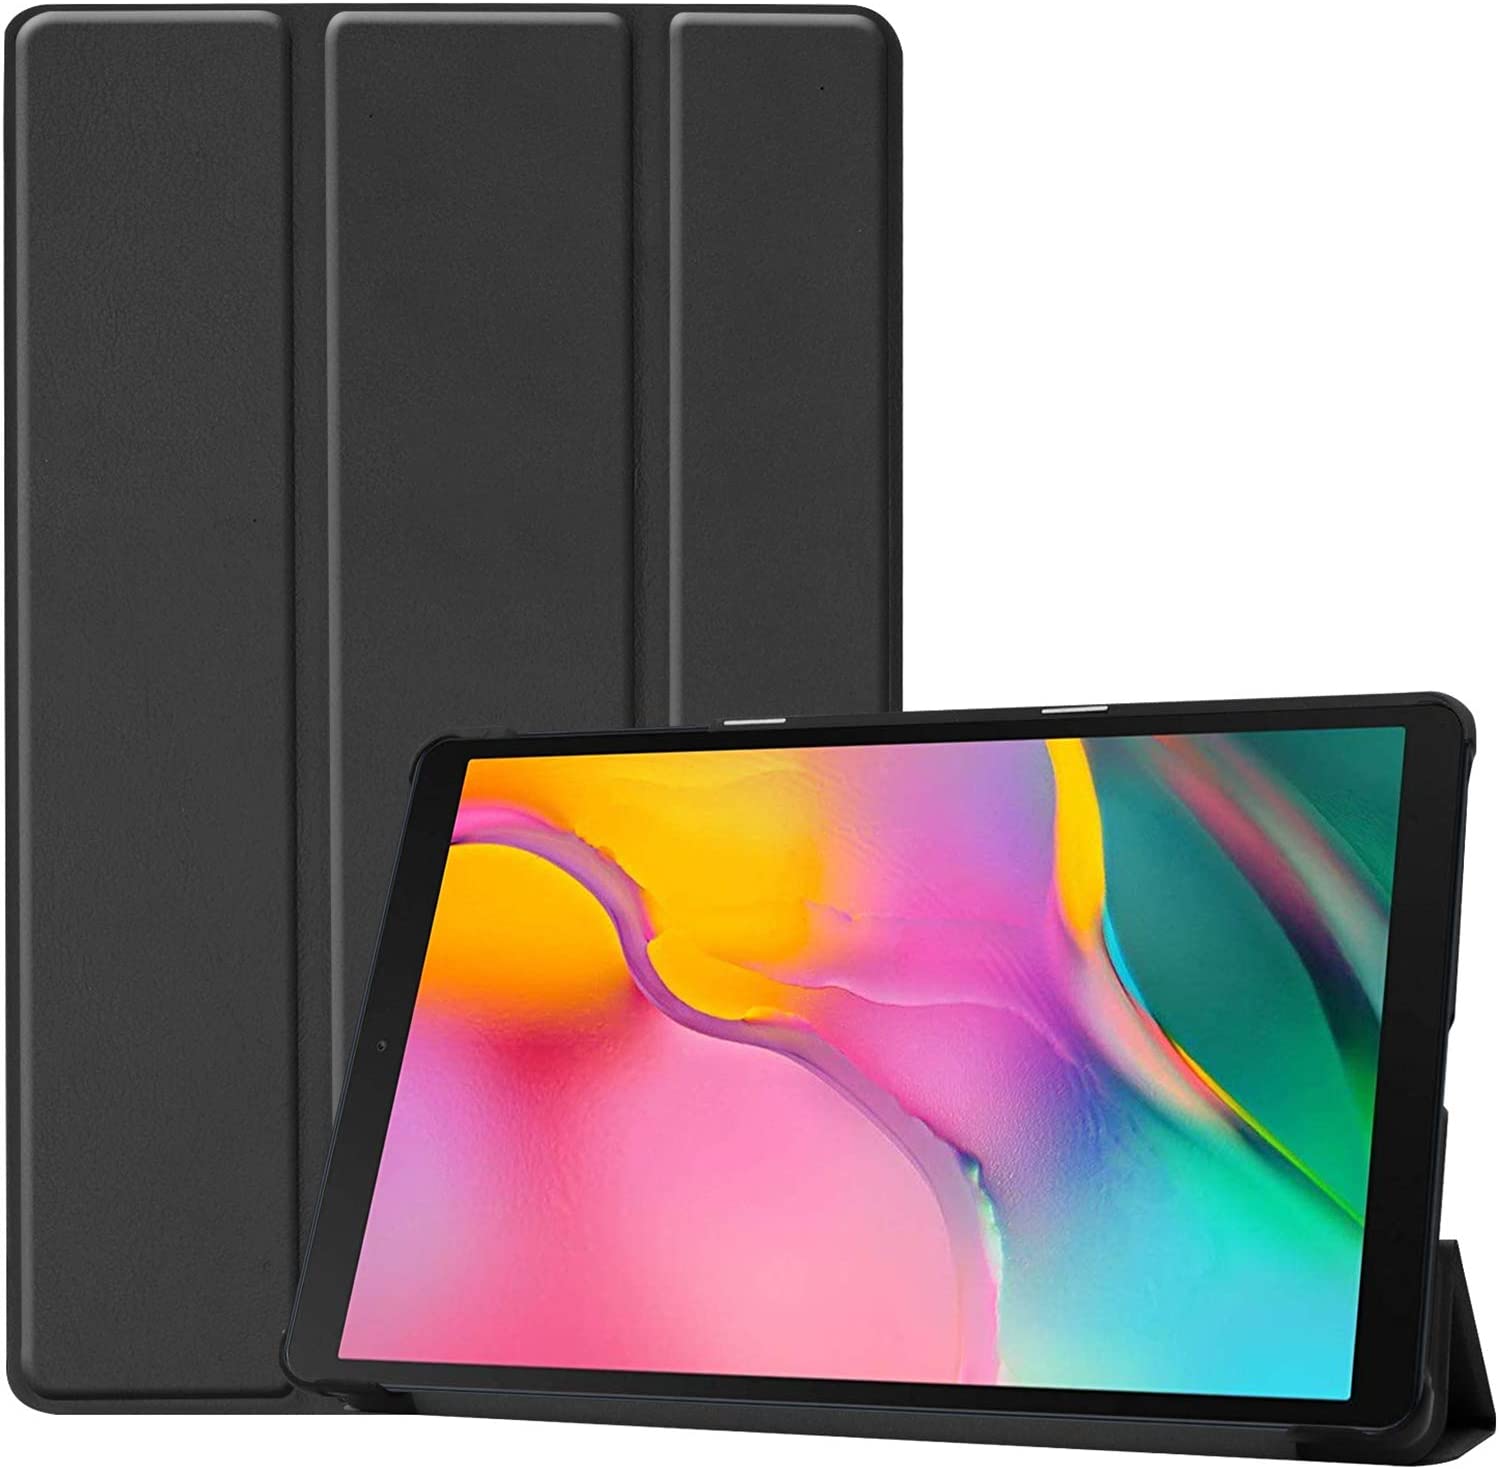 Procase Funda para Galaxy Tab A 10.1 SM-T510 SM-T515 SM-T517 2019, Carcasa Folio Delgada para Samsung Galaxy Tab A 10.1 Pulgadas Tablet SM-T510 / SM-T515 / SM-T517 2019 Versión -Negro